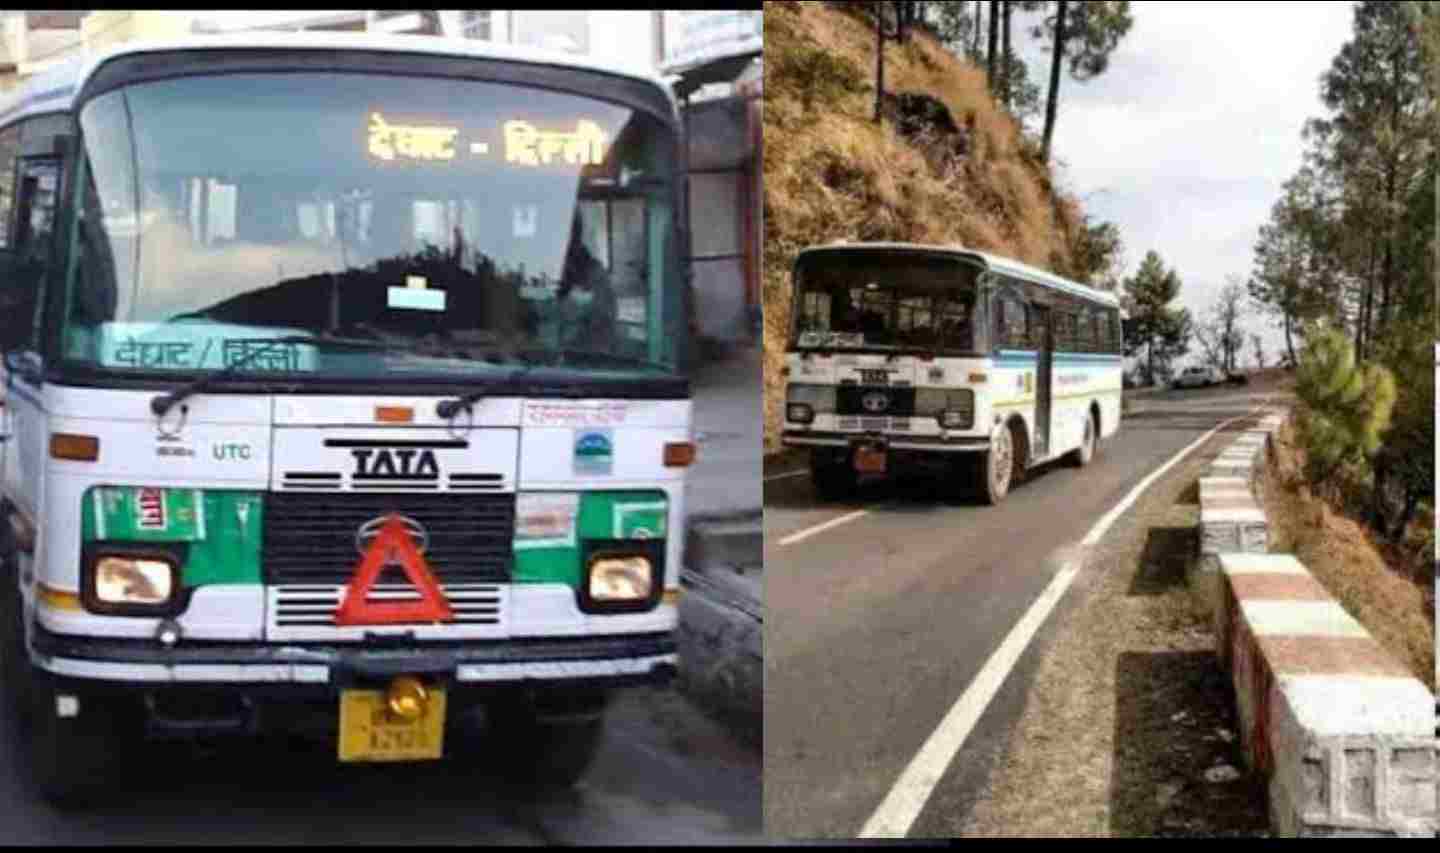 Uttarakhand latest news: No entry for Roadways buses and other vehicles in Delhi. Uttarakhand Delhi Roadways Bus